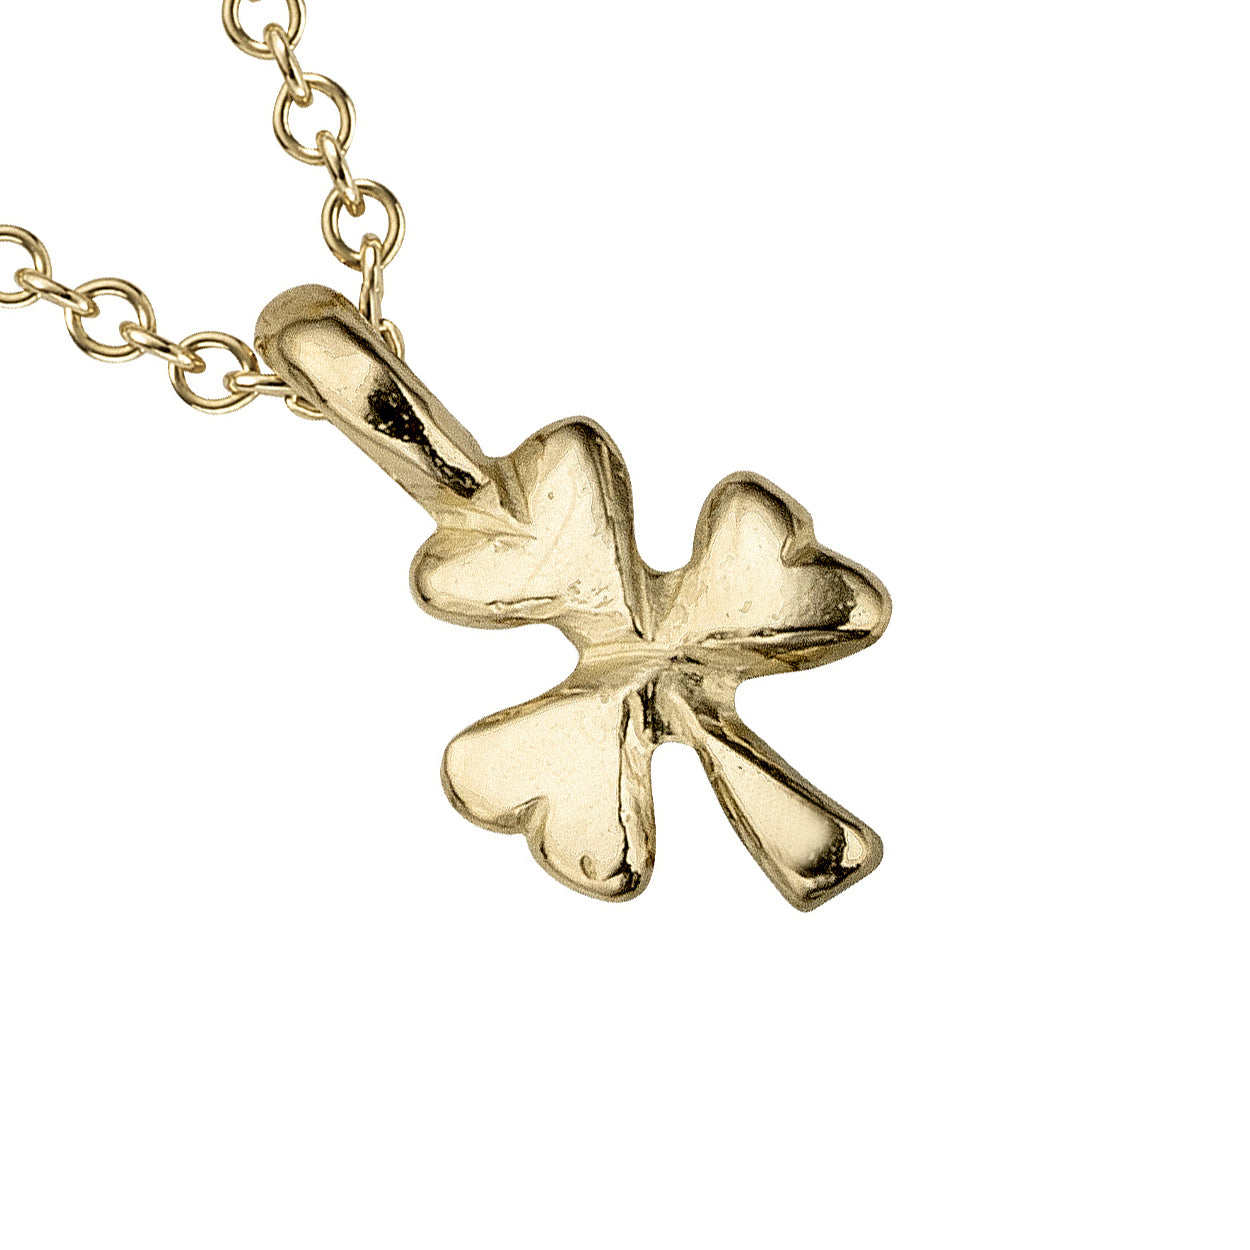 Children's Gold Baby Shamrock Necklace